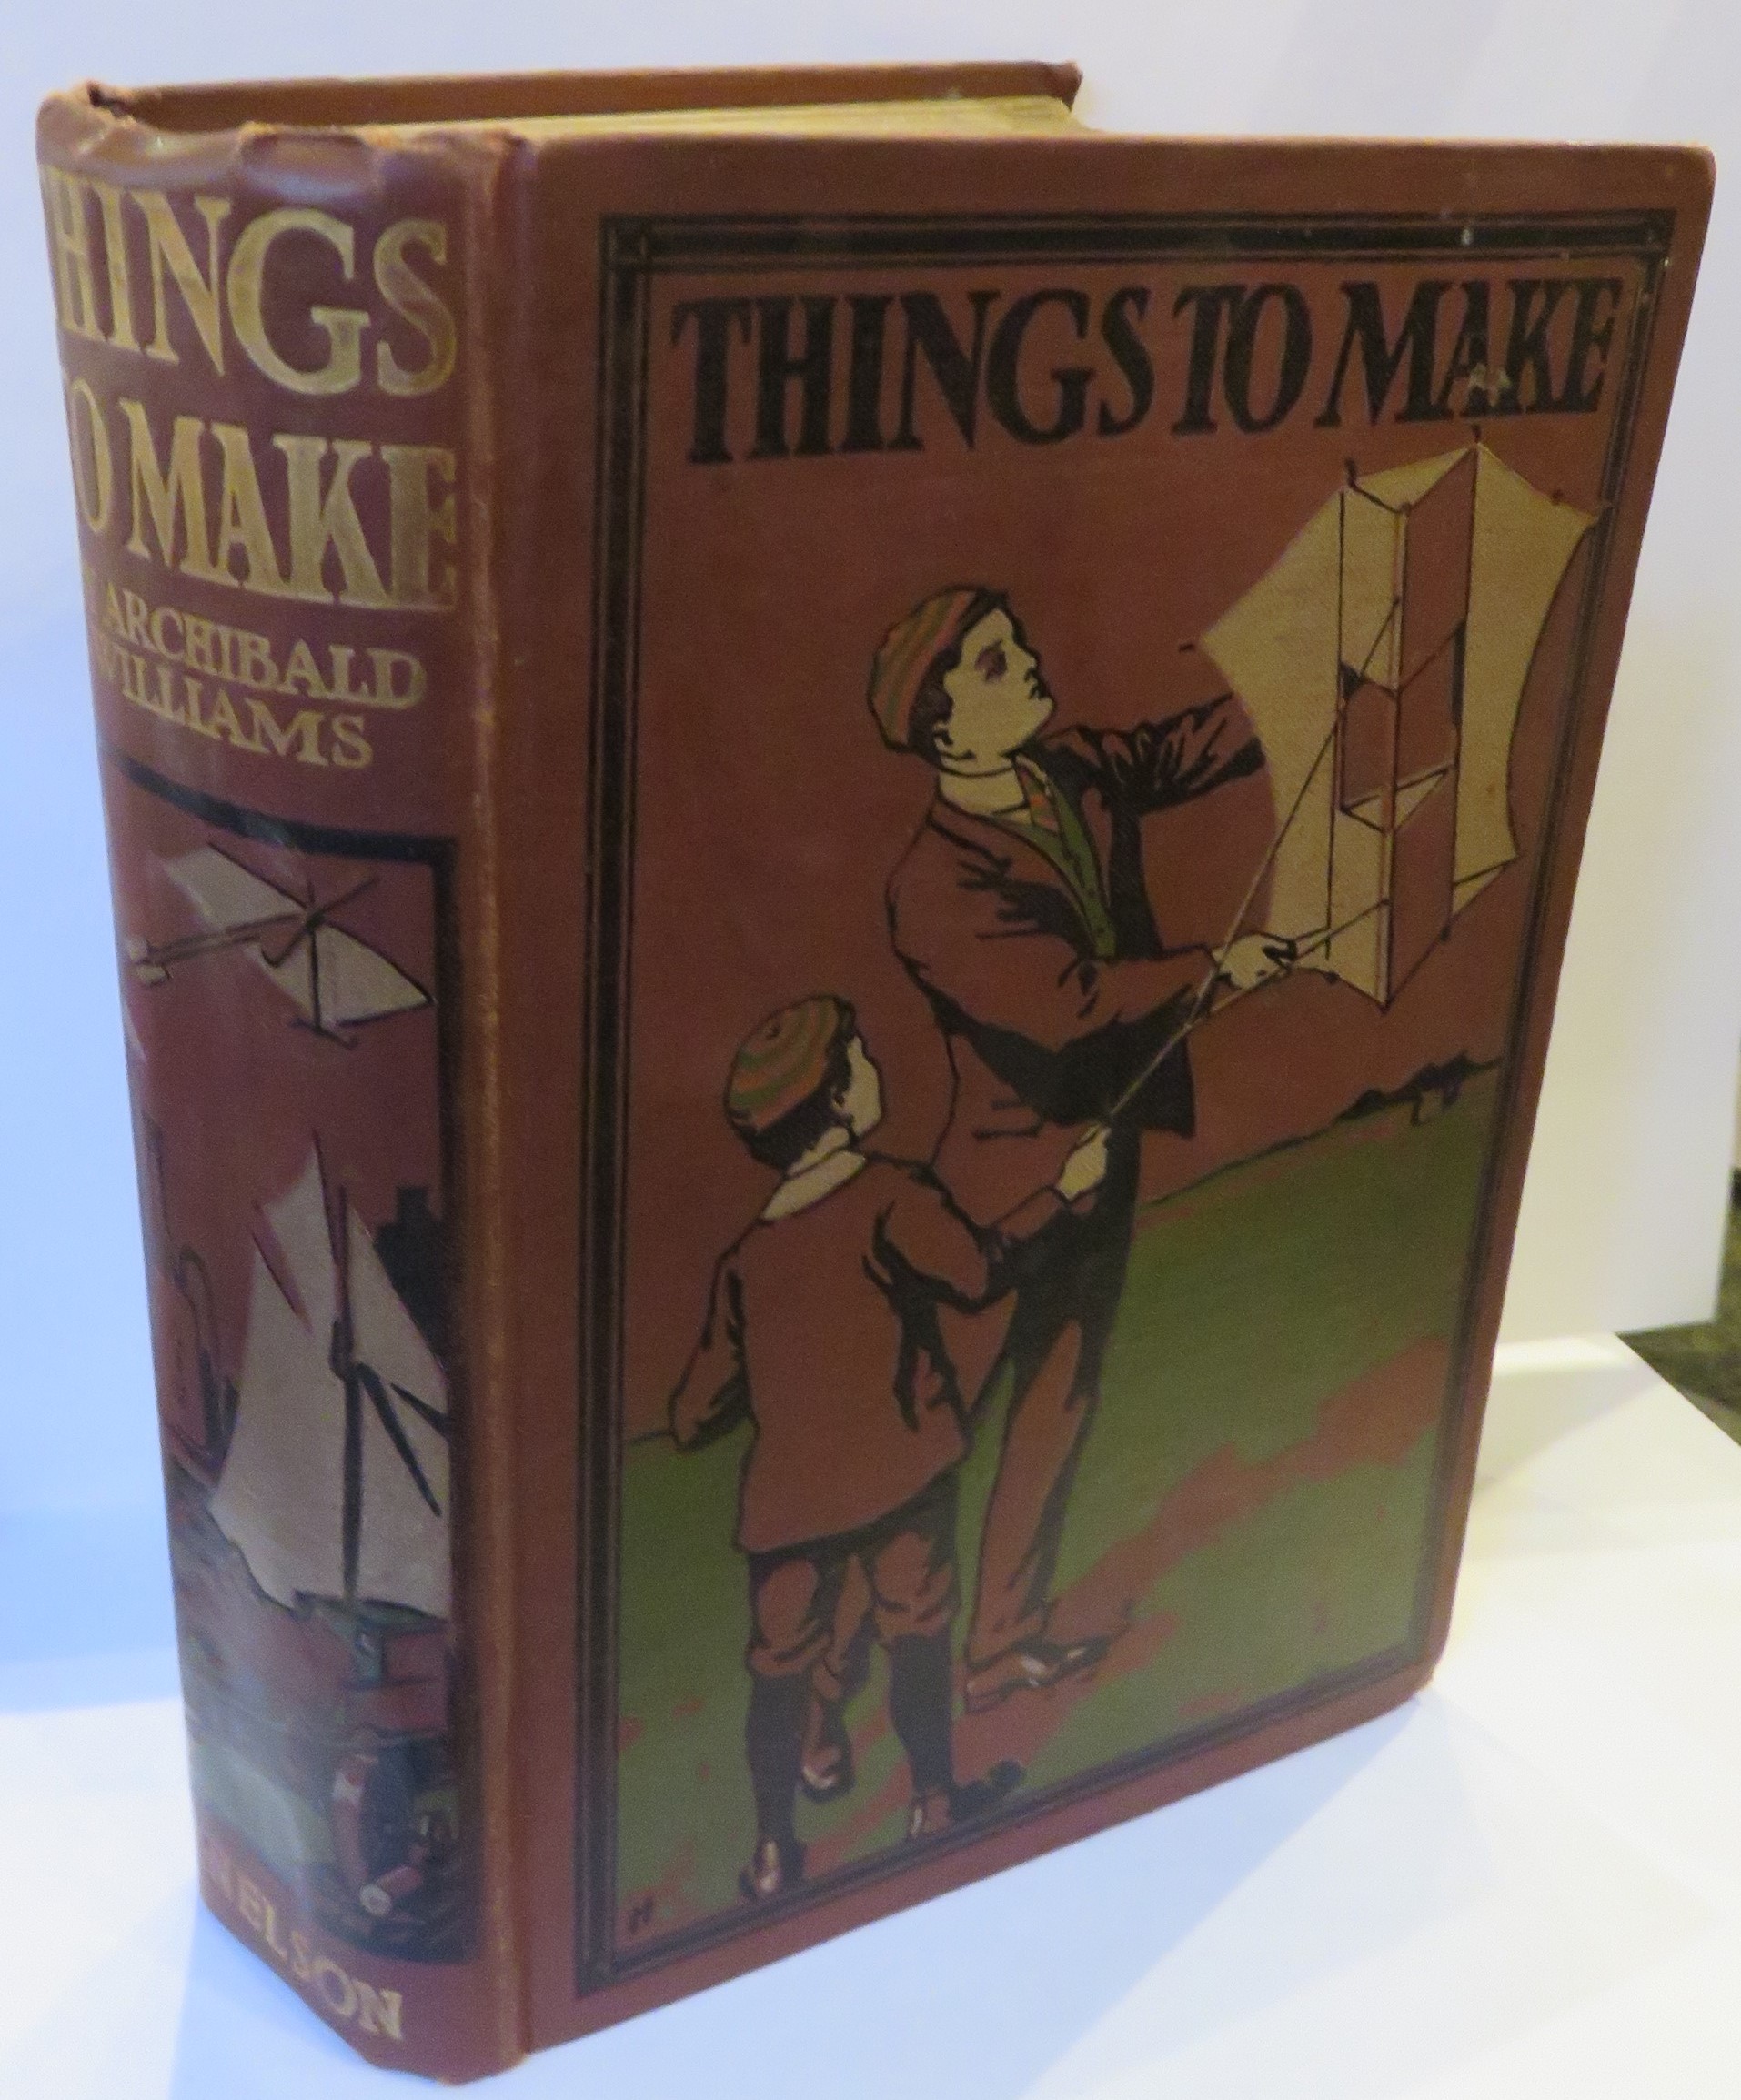 Things To Make